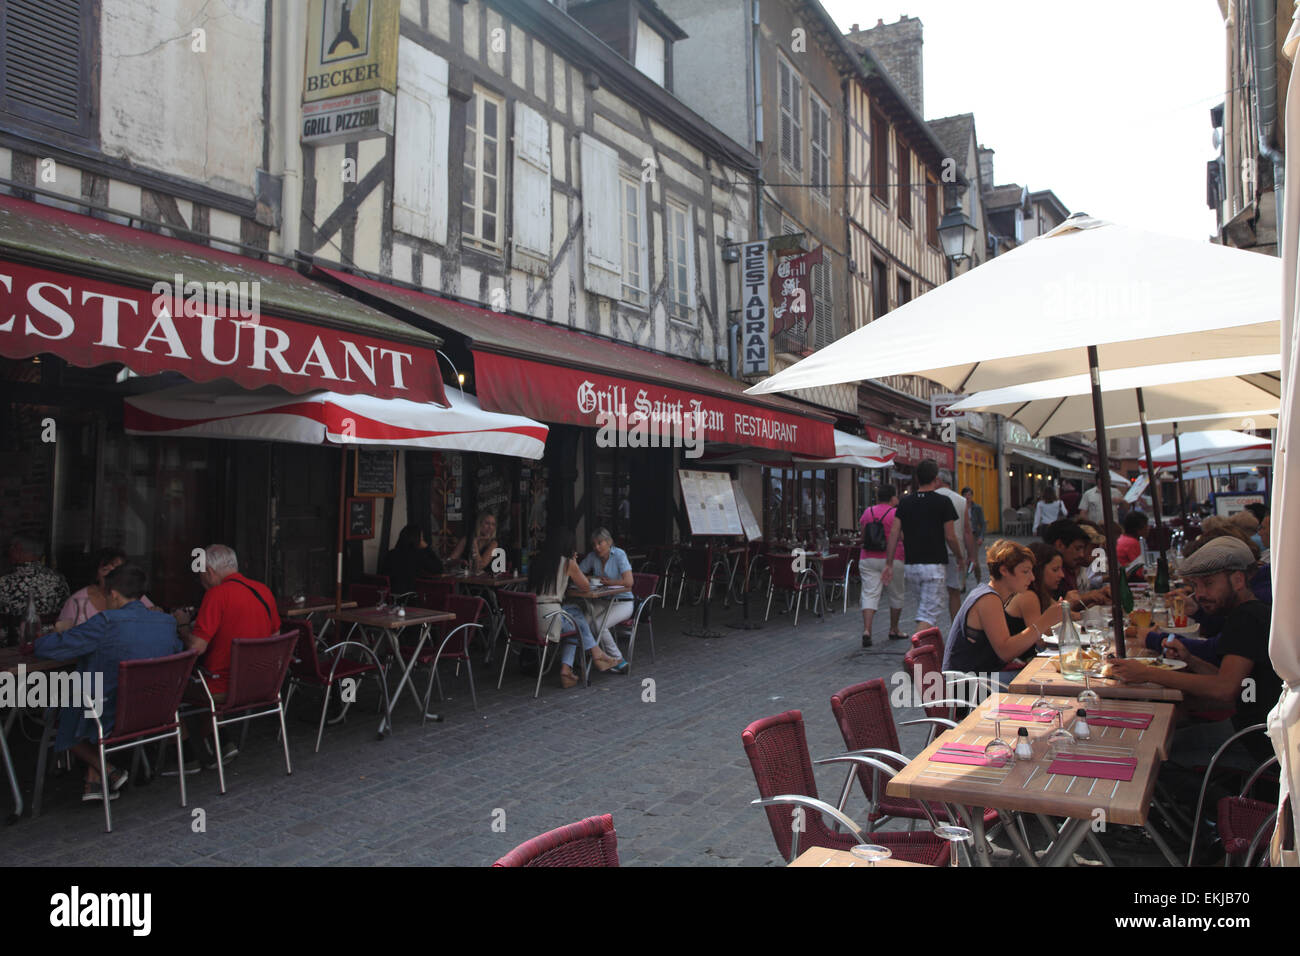 Menschen Essen im Grill St Jean Restaurant in der Rue Champeaux, Troyes,  Aube, Frankreich Stockfotografie - Alamy